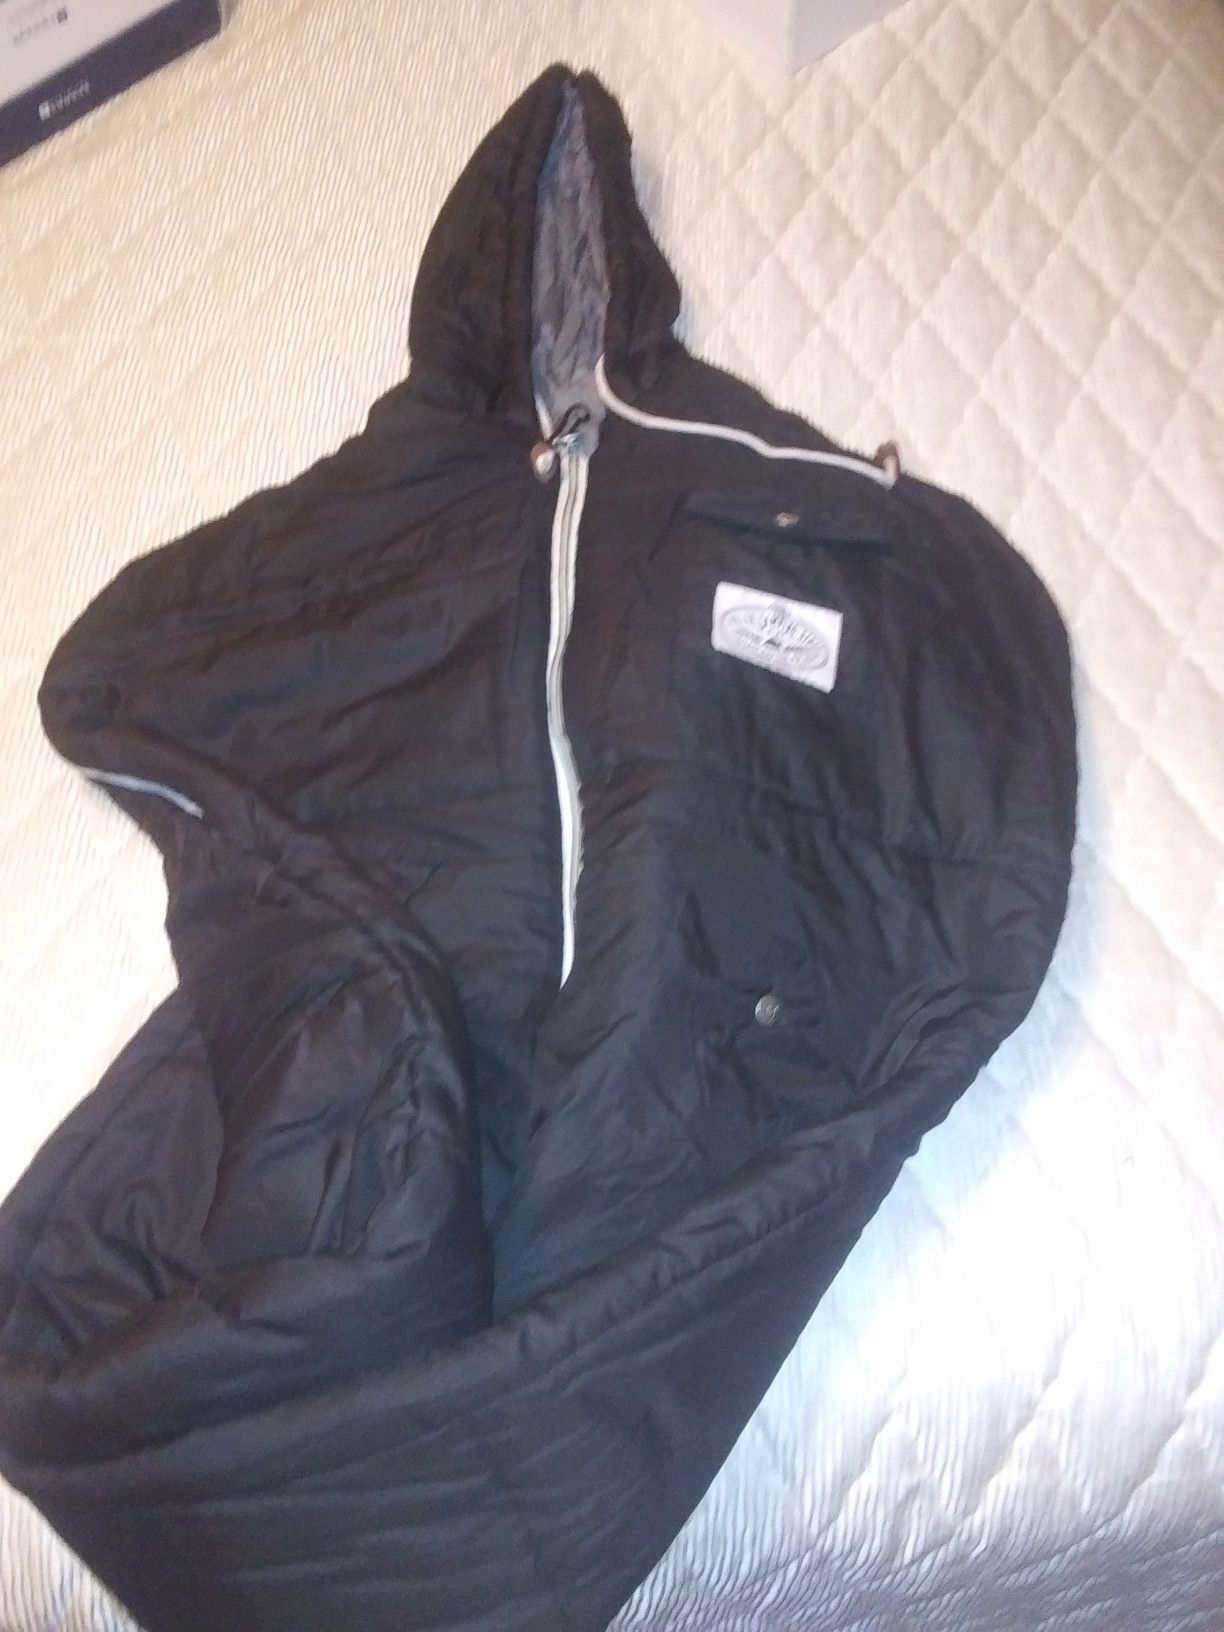 Sleeping bag hoodie